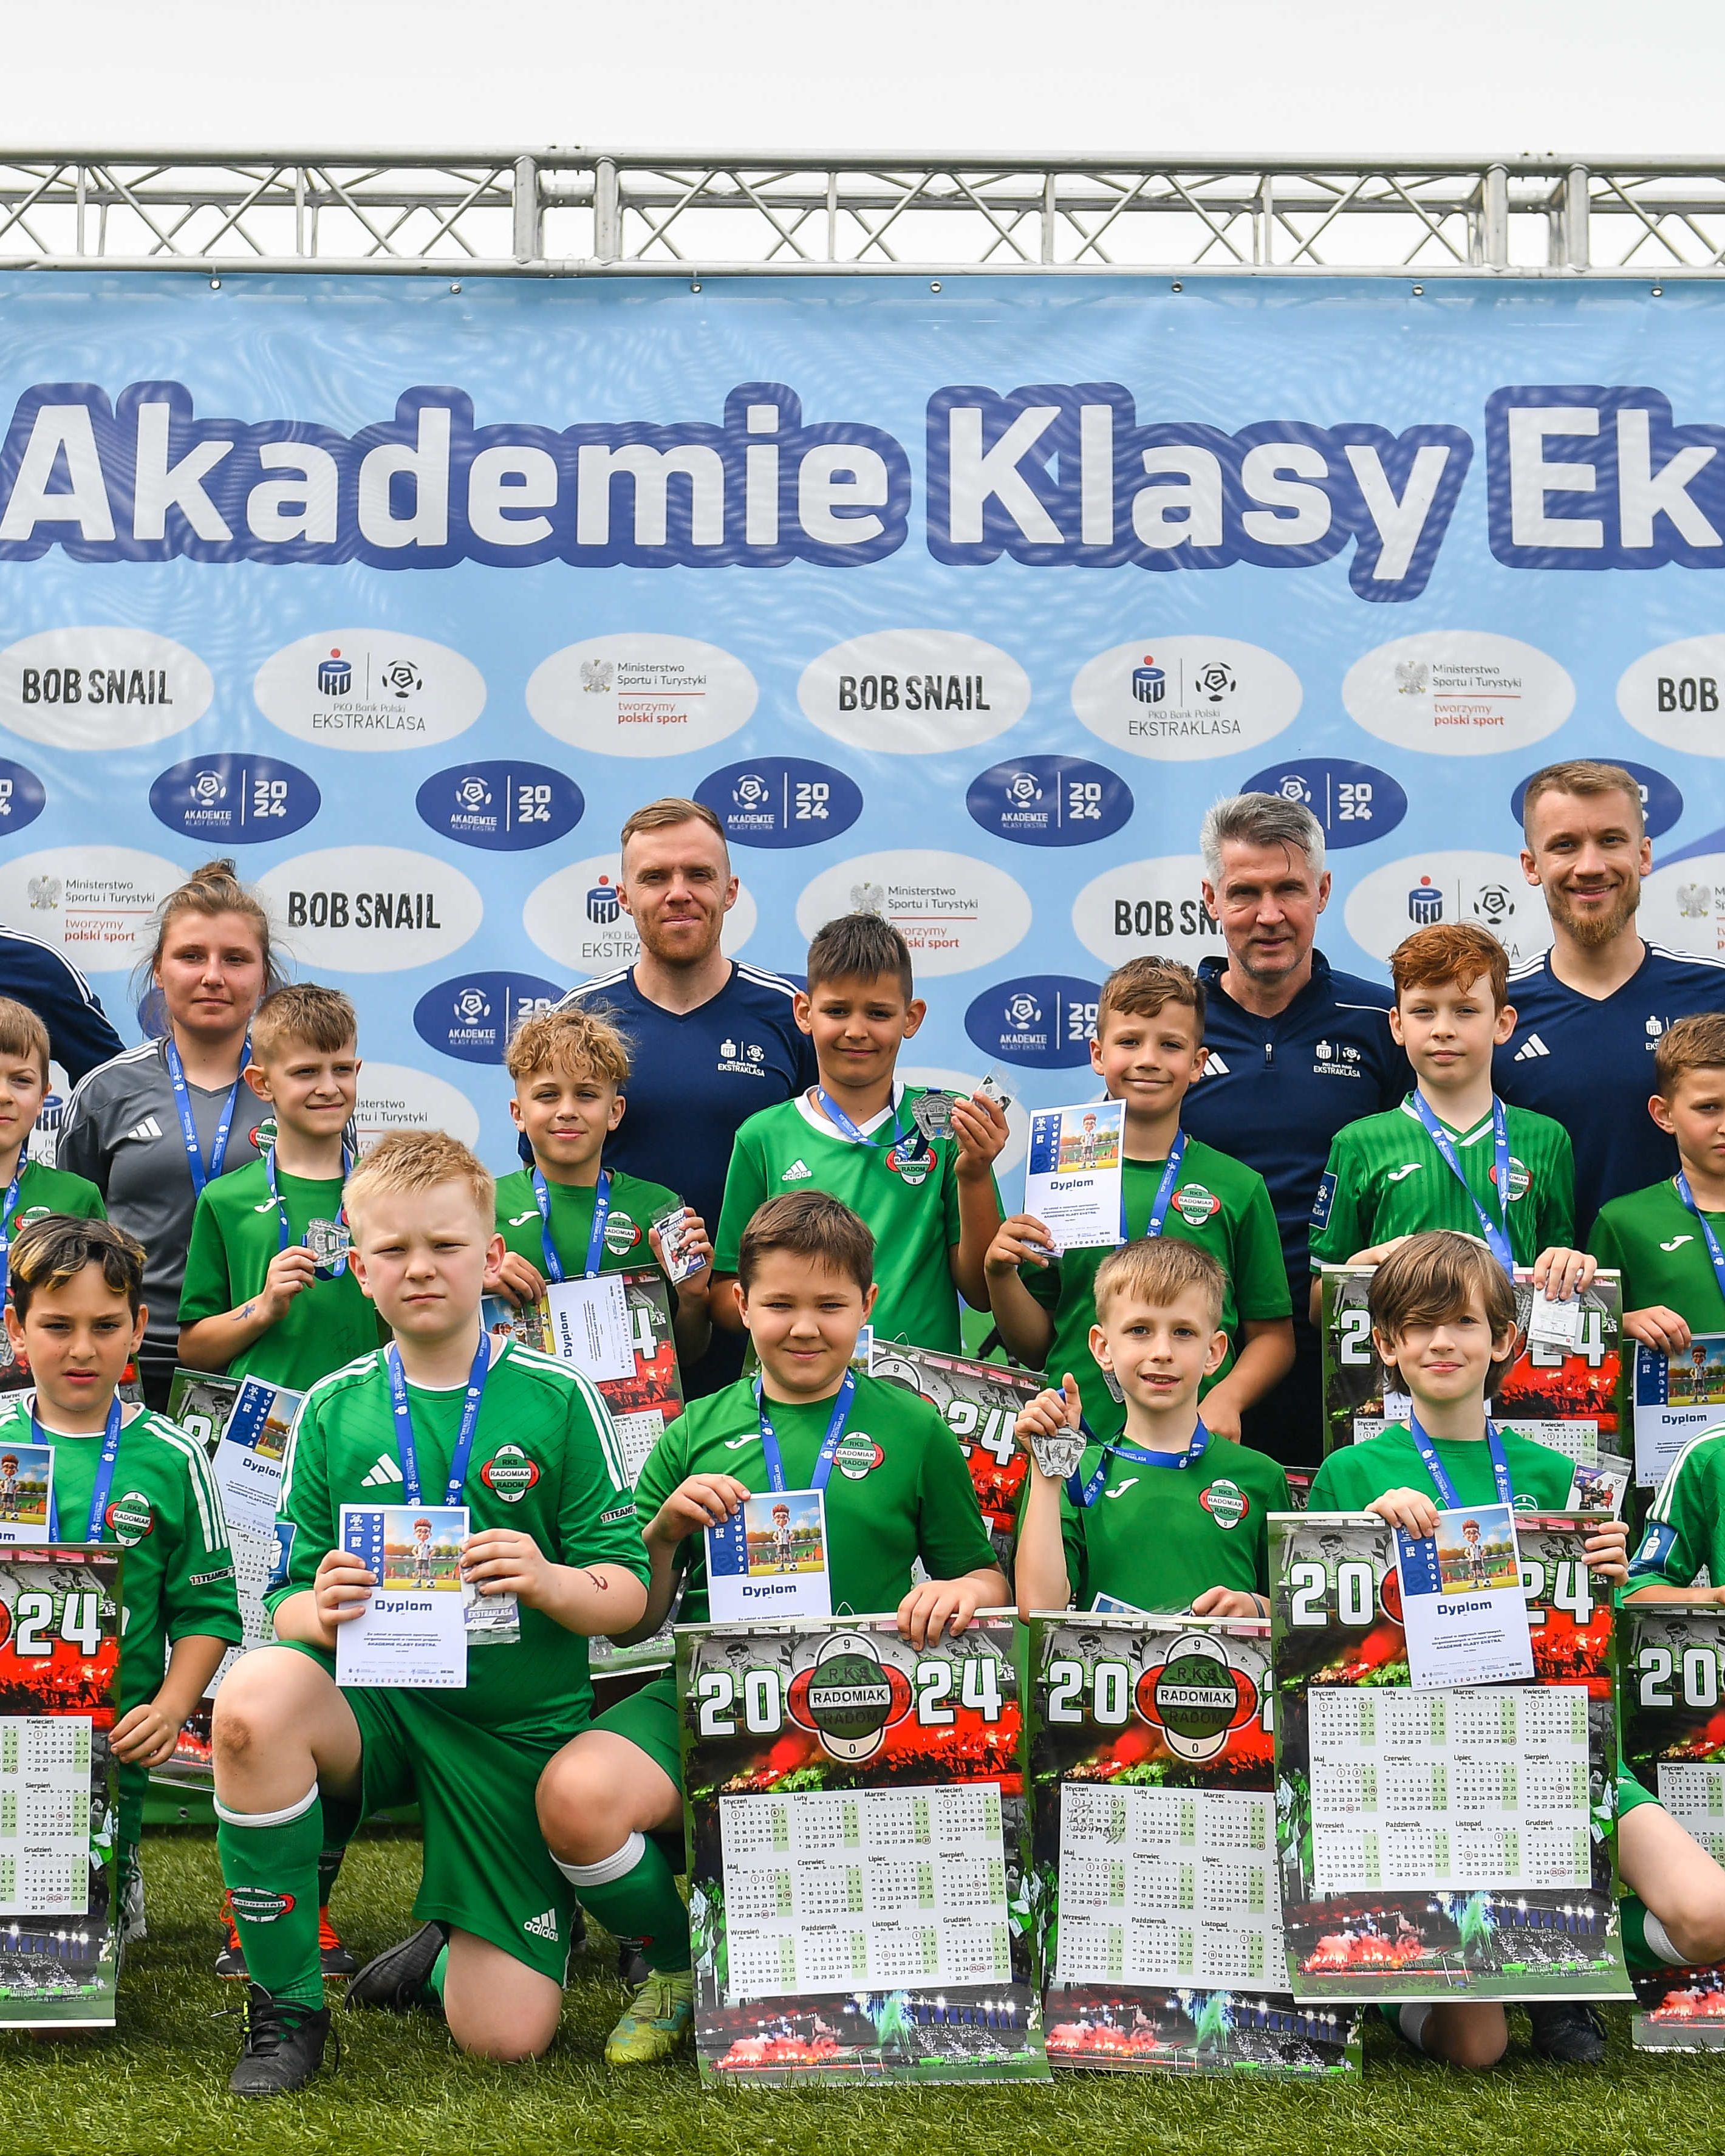 Ruszyły Akademie Klasy Ekstra! Wspieramy rozwój piłkarskich talentów 